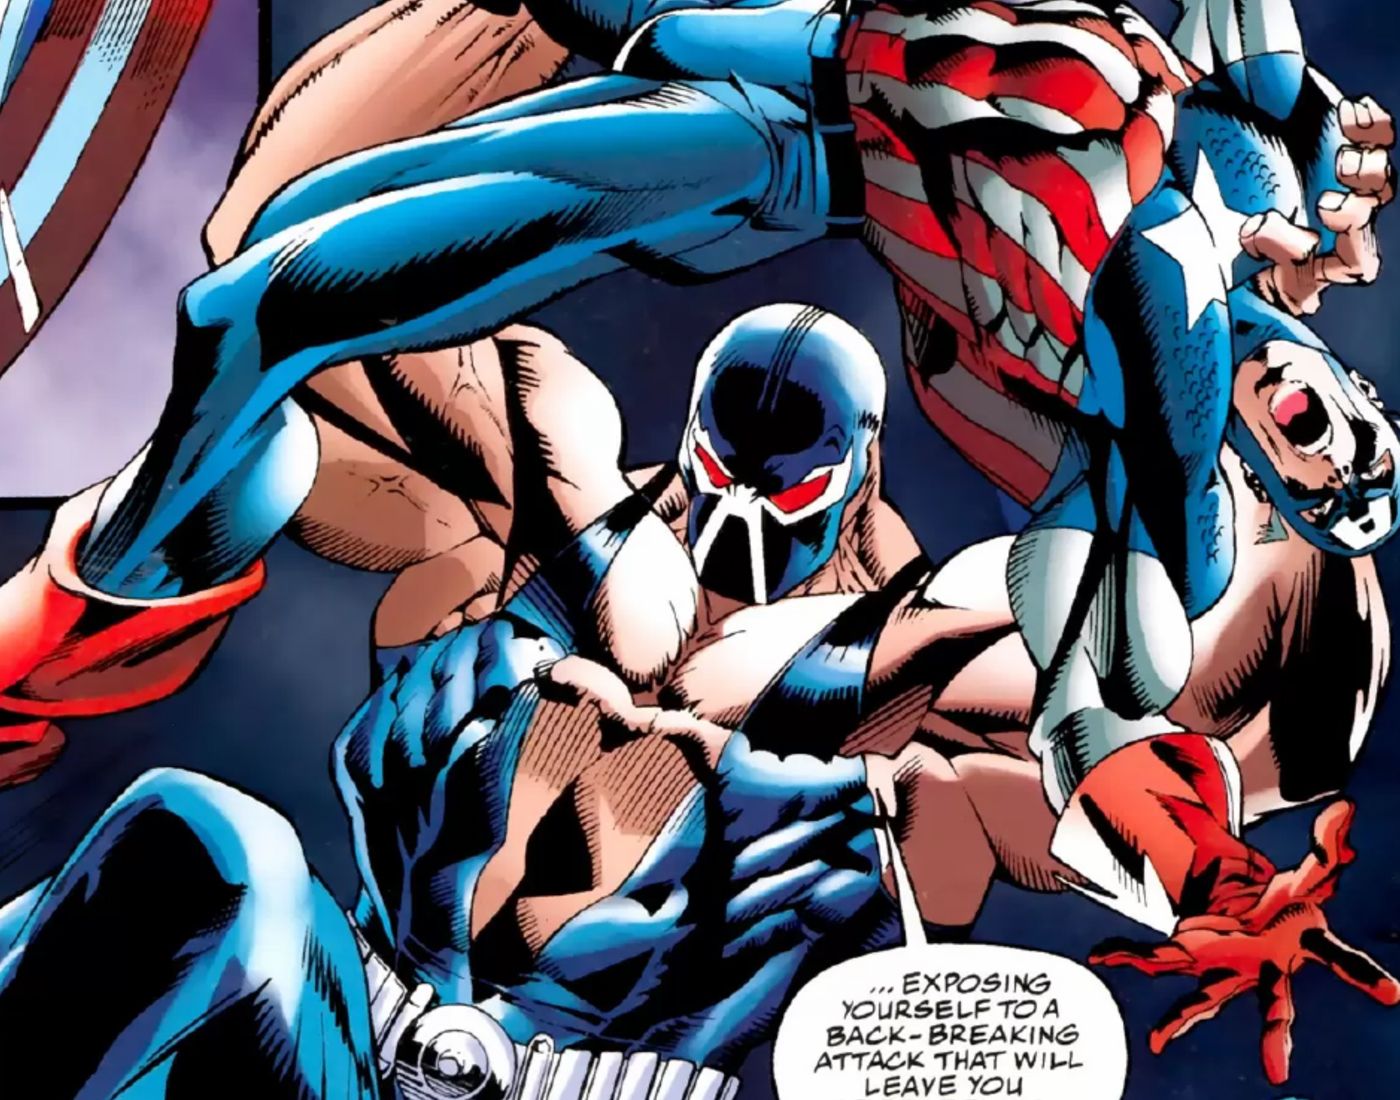 Captain America vs bane